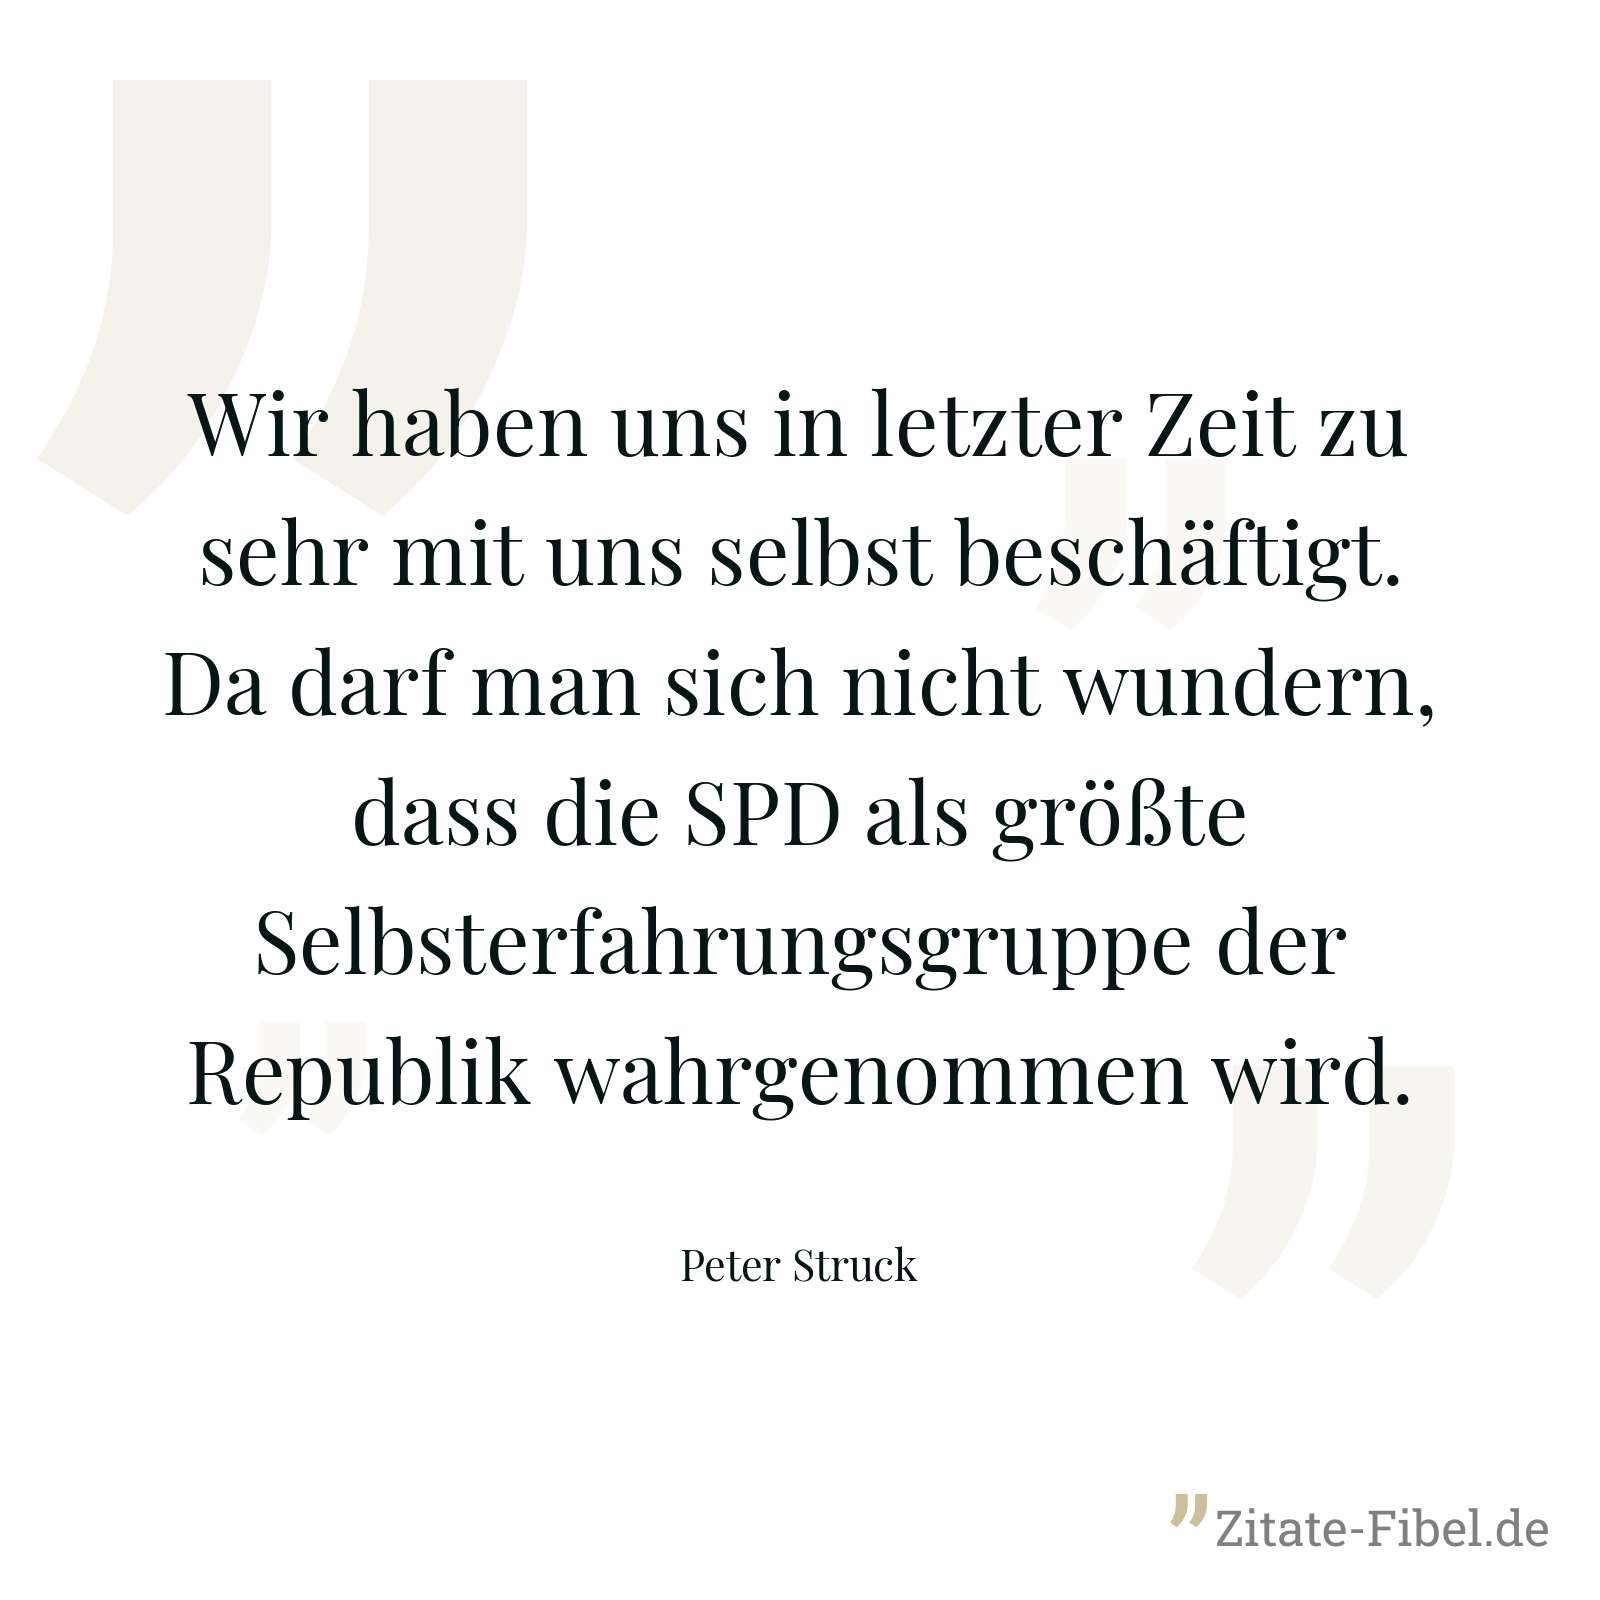 Wir haben uns in letzter Zeit zu sehr mit uns selbst beschäftigt. Da darf man sich nicht wundern, dass die SPD als größte Selbsterfahrungsgruppe der Republik wahrgenommen wird. - Peter Struck